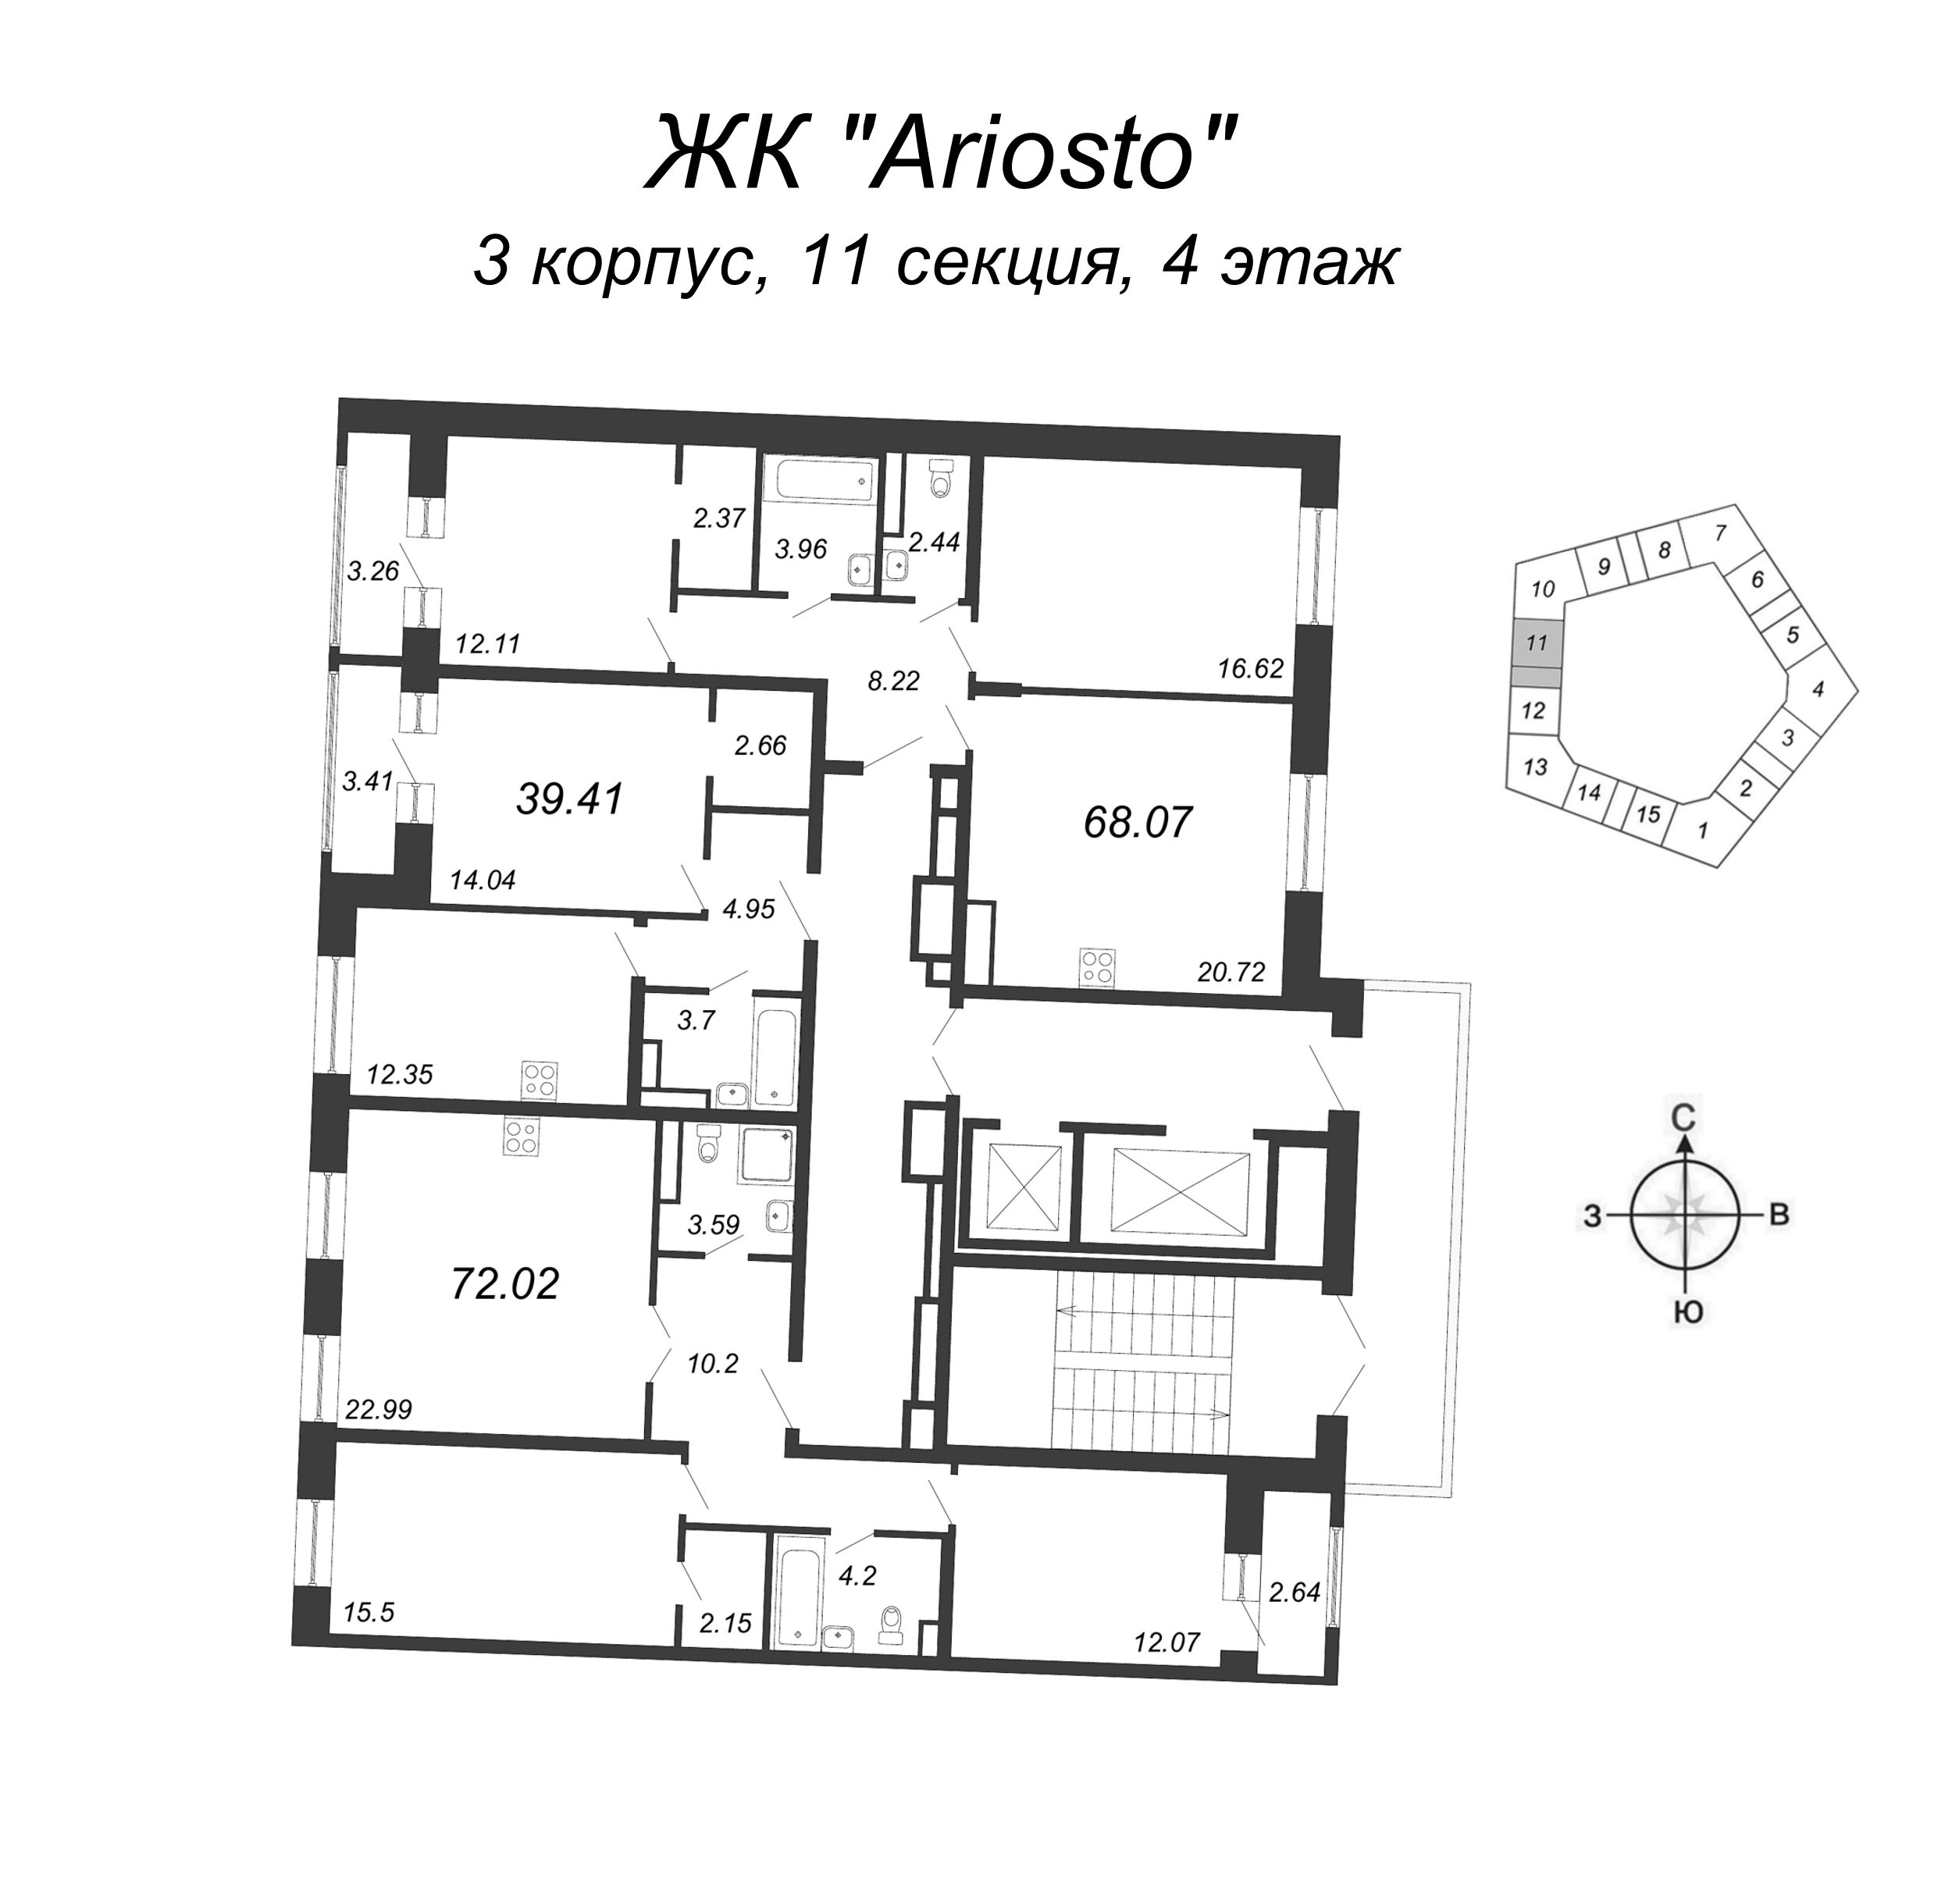 3-комнатная (Евро) квартира, 68.07 м² в ЖК "Ariosto" - планировка этажа